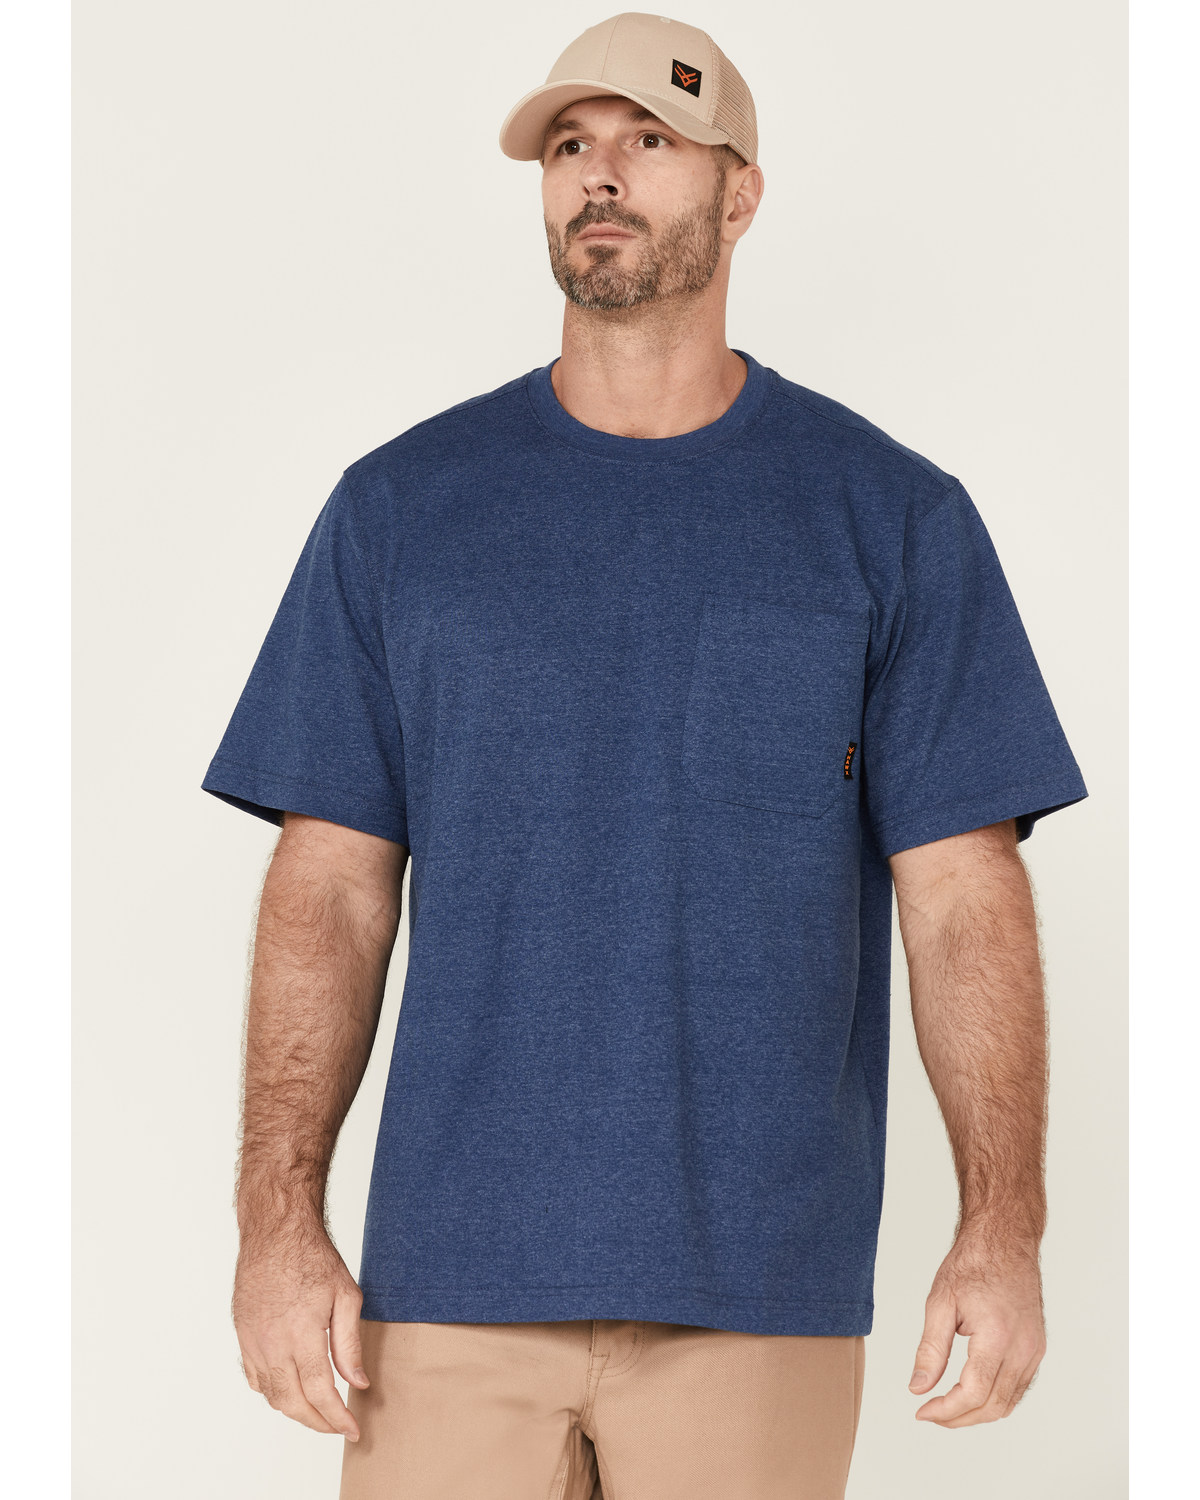 Hawx Men's Heavyweight Short Sleeve Work Pocket T-Shirt